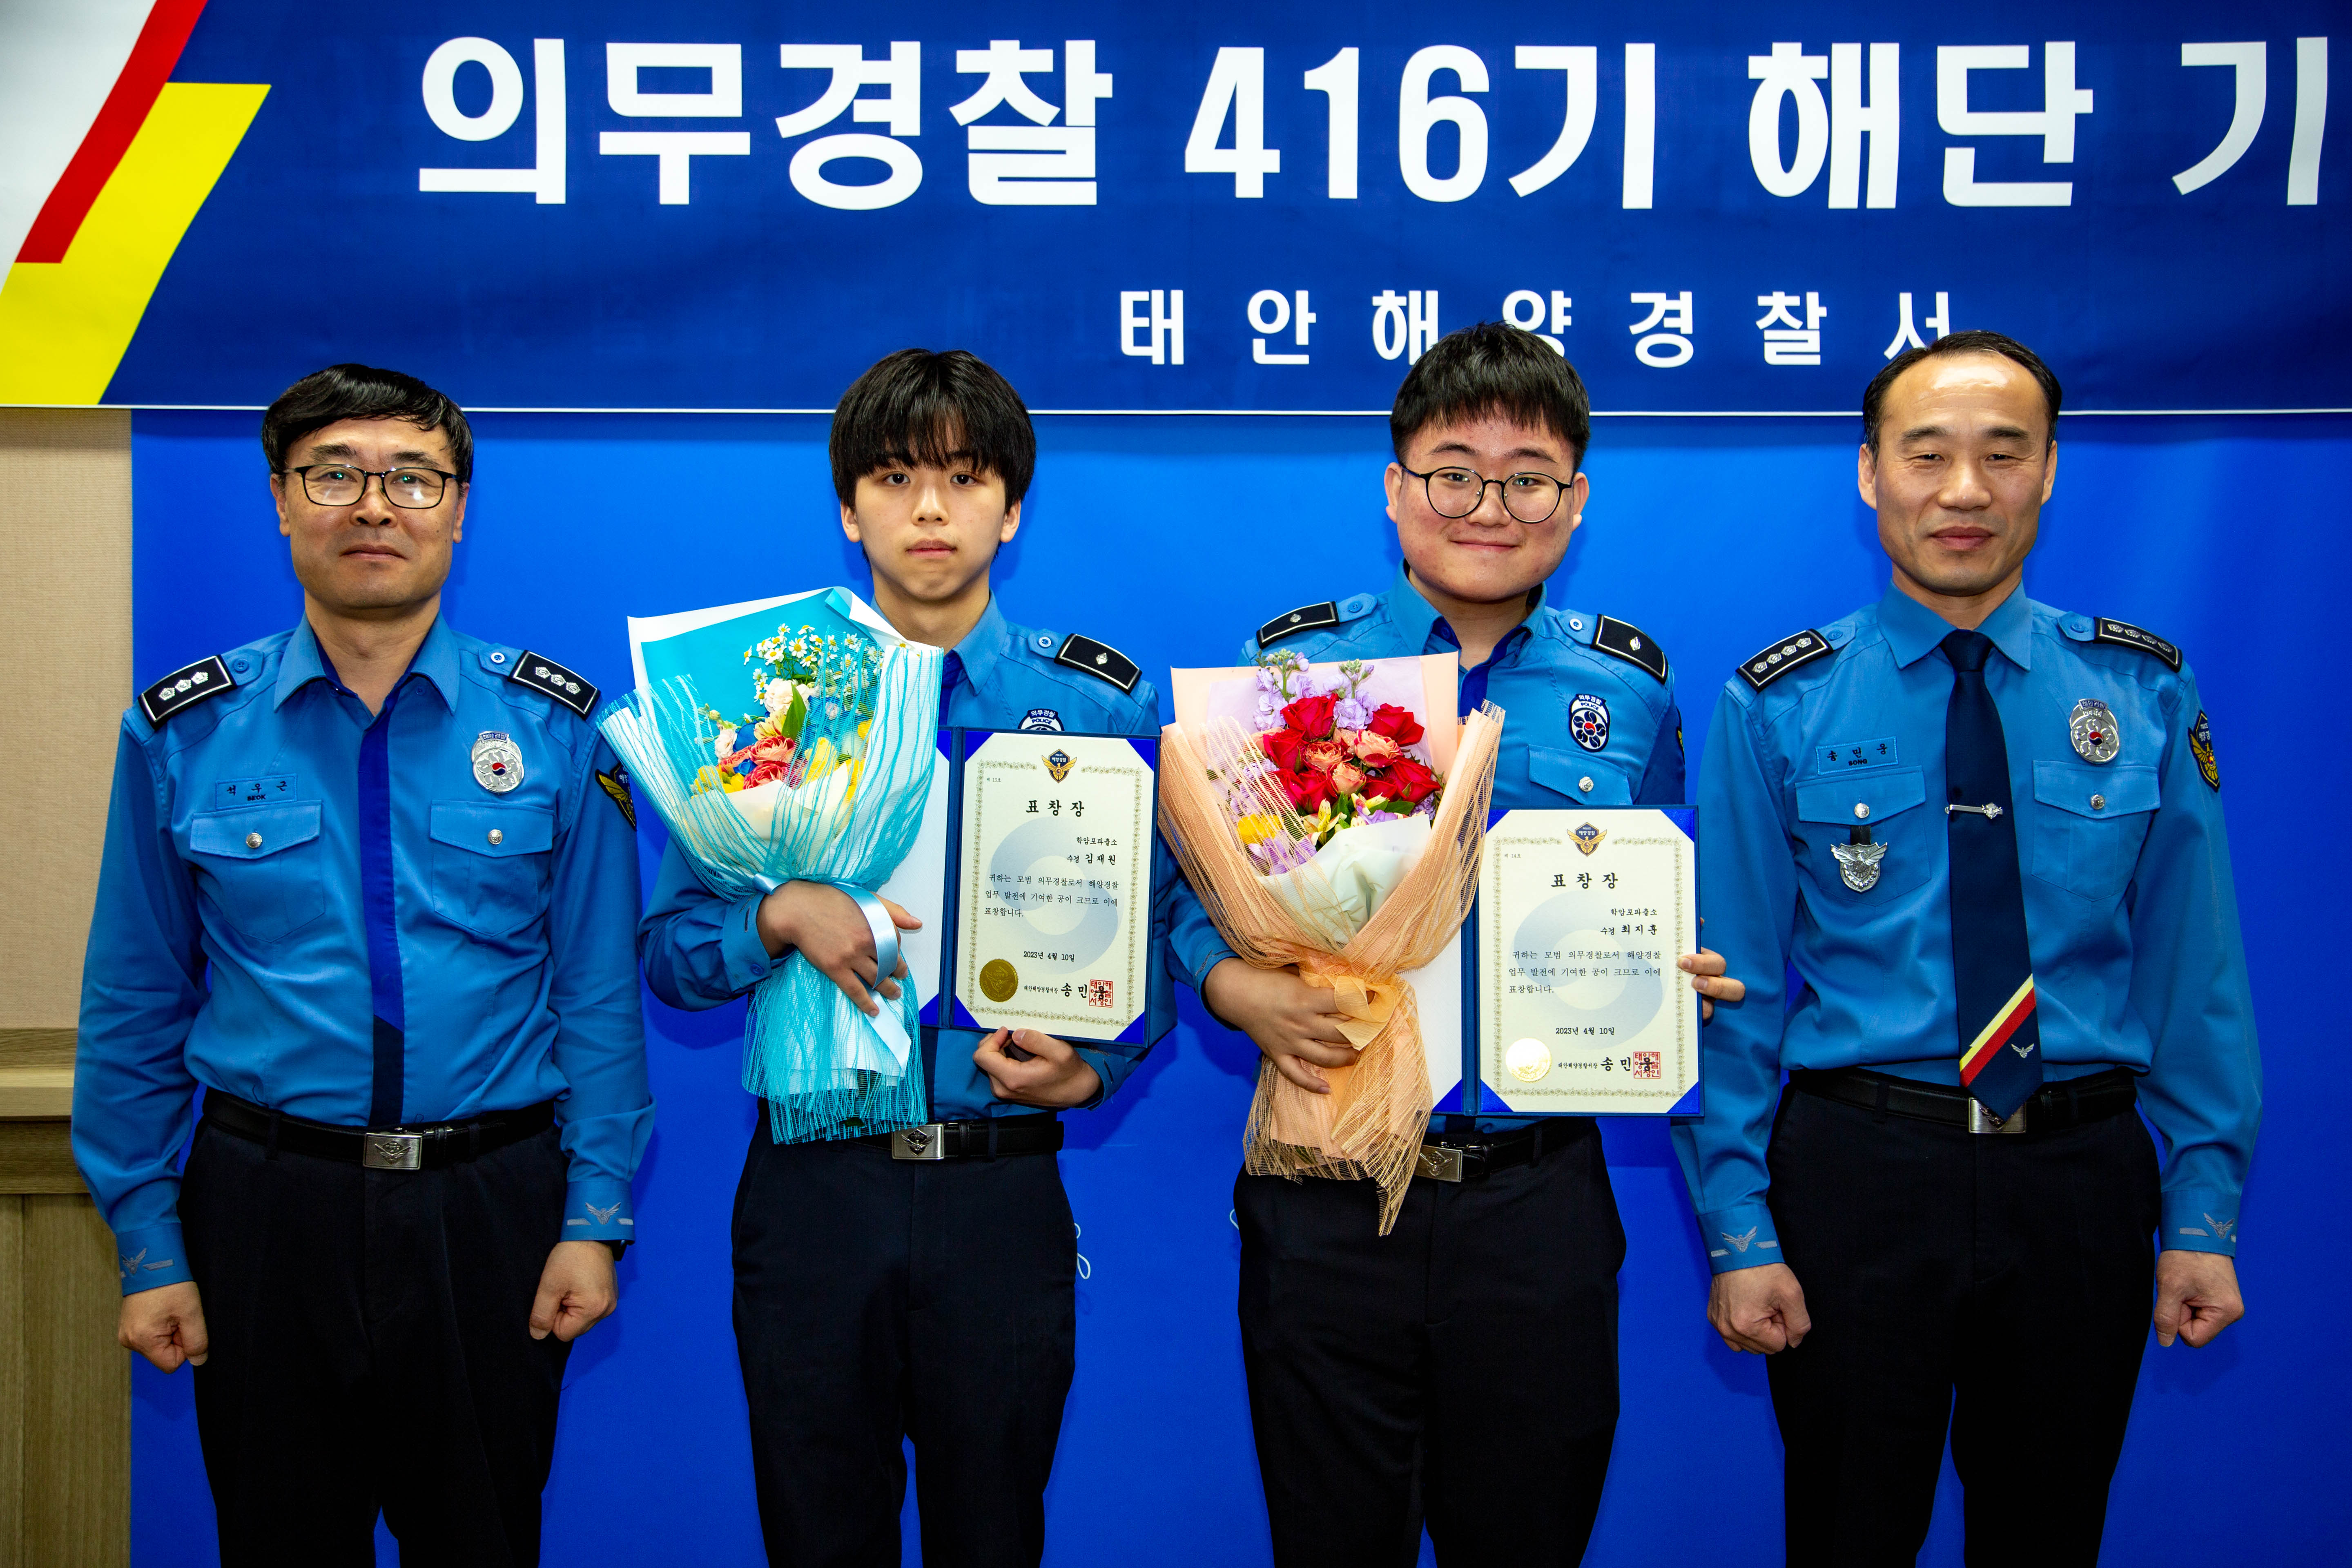 충남 태안해양경찰서는 10일 해양경찰 의무경찰 마지막 기수인 제416기 해단 기념식을 개최했다. 태안해경 제공